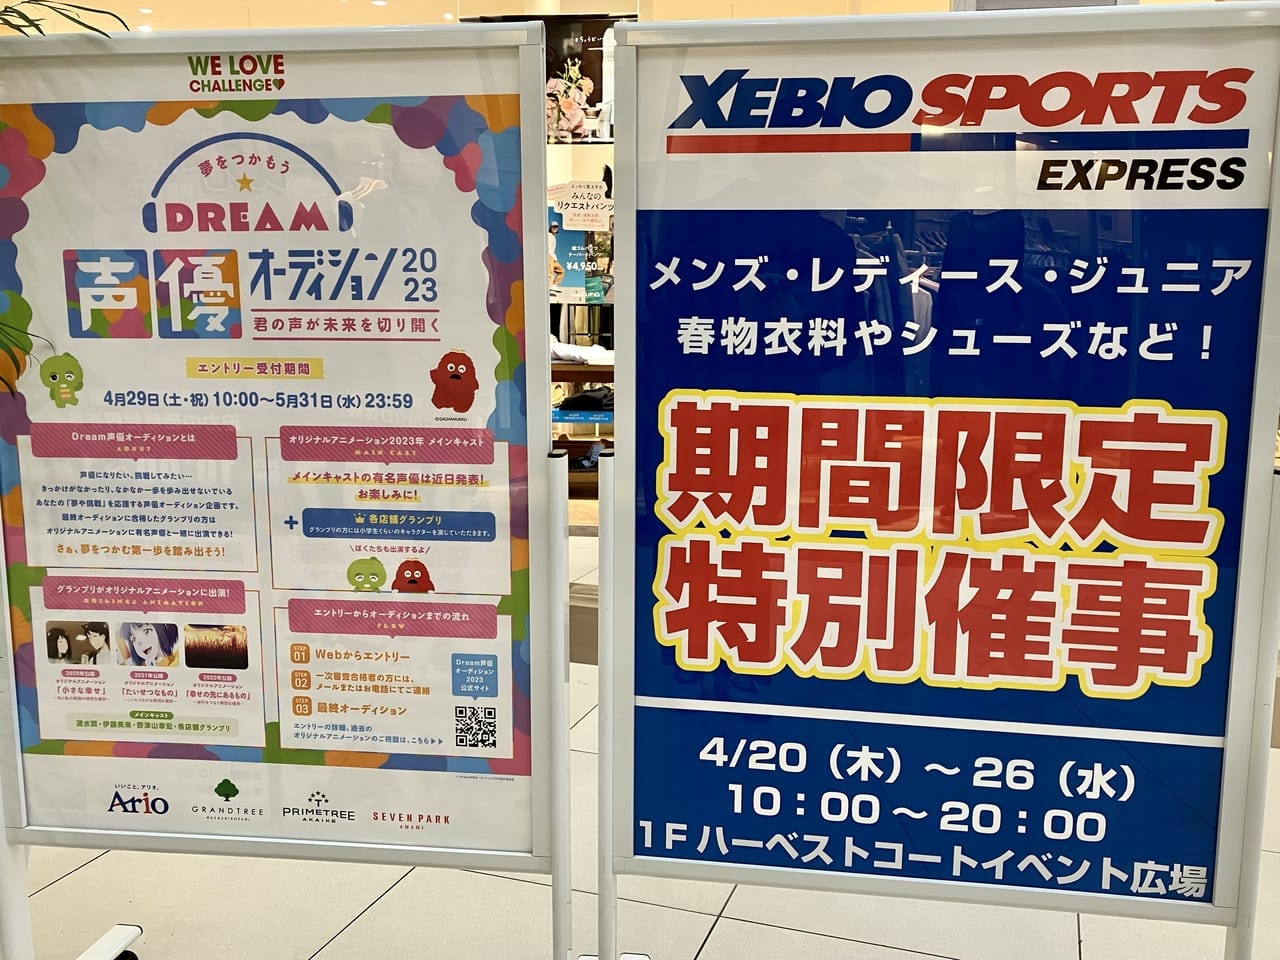 人気商品をお得にゲットしちゃおう。「アリオ札幌」のゼビオスポーツエクスプレスが特別催事を開催中ですよ。